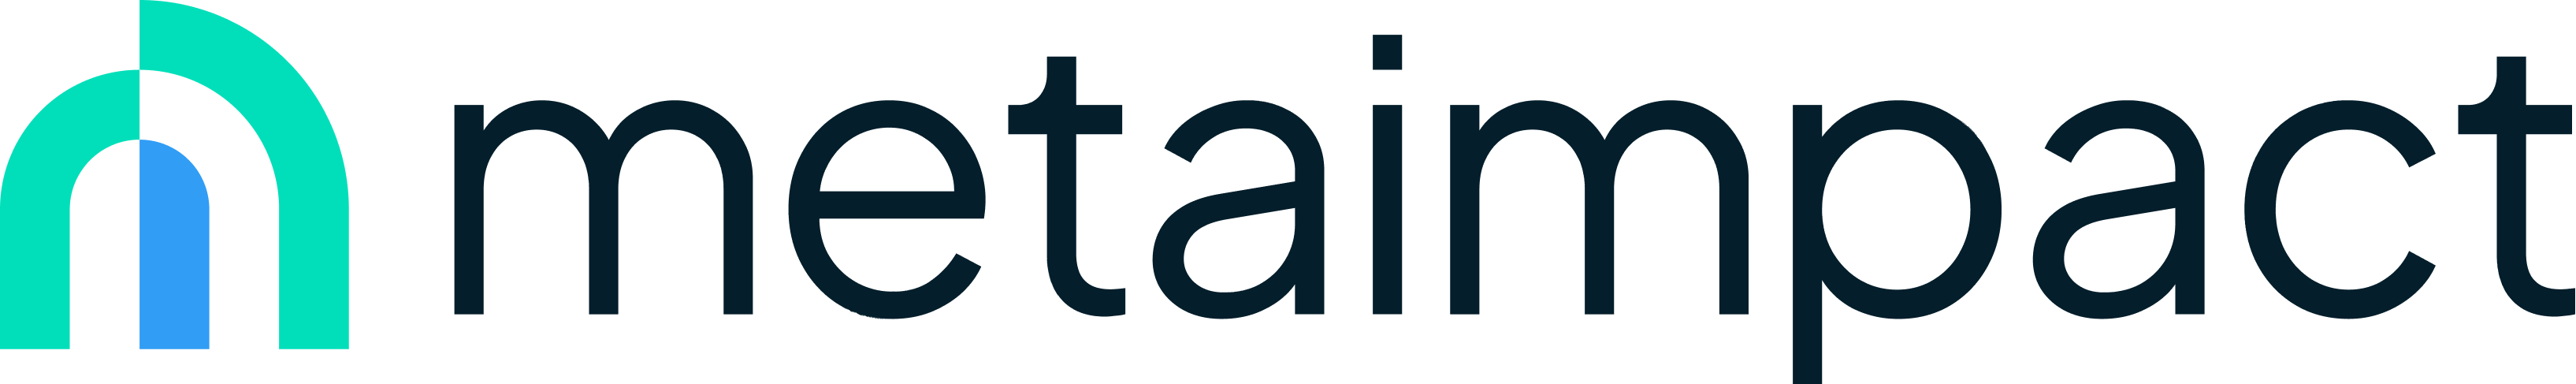 Metaimpact logo